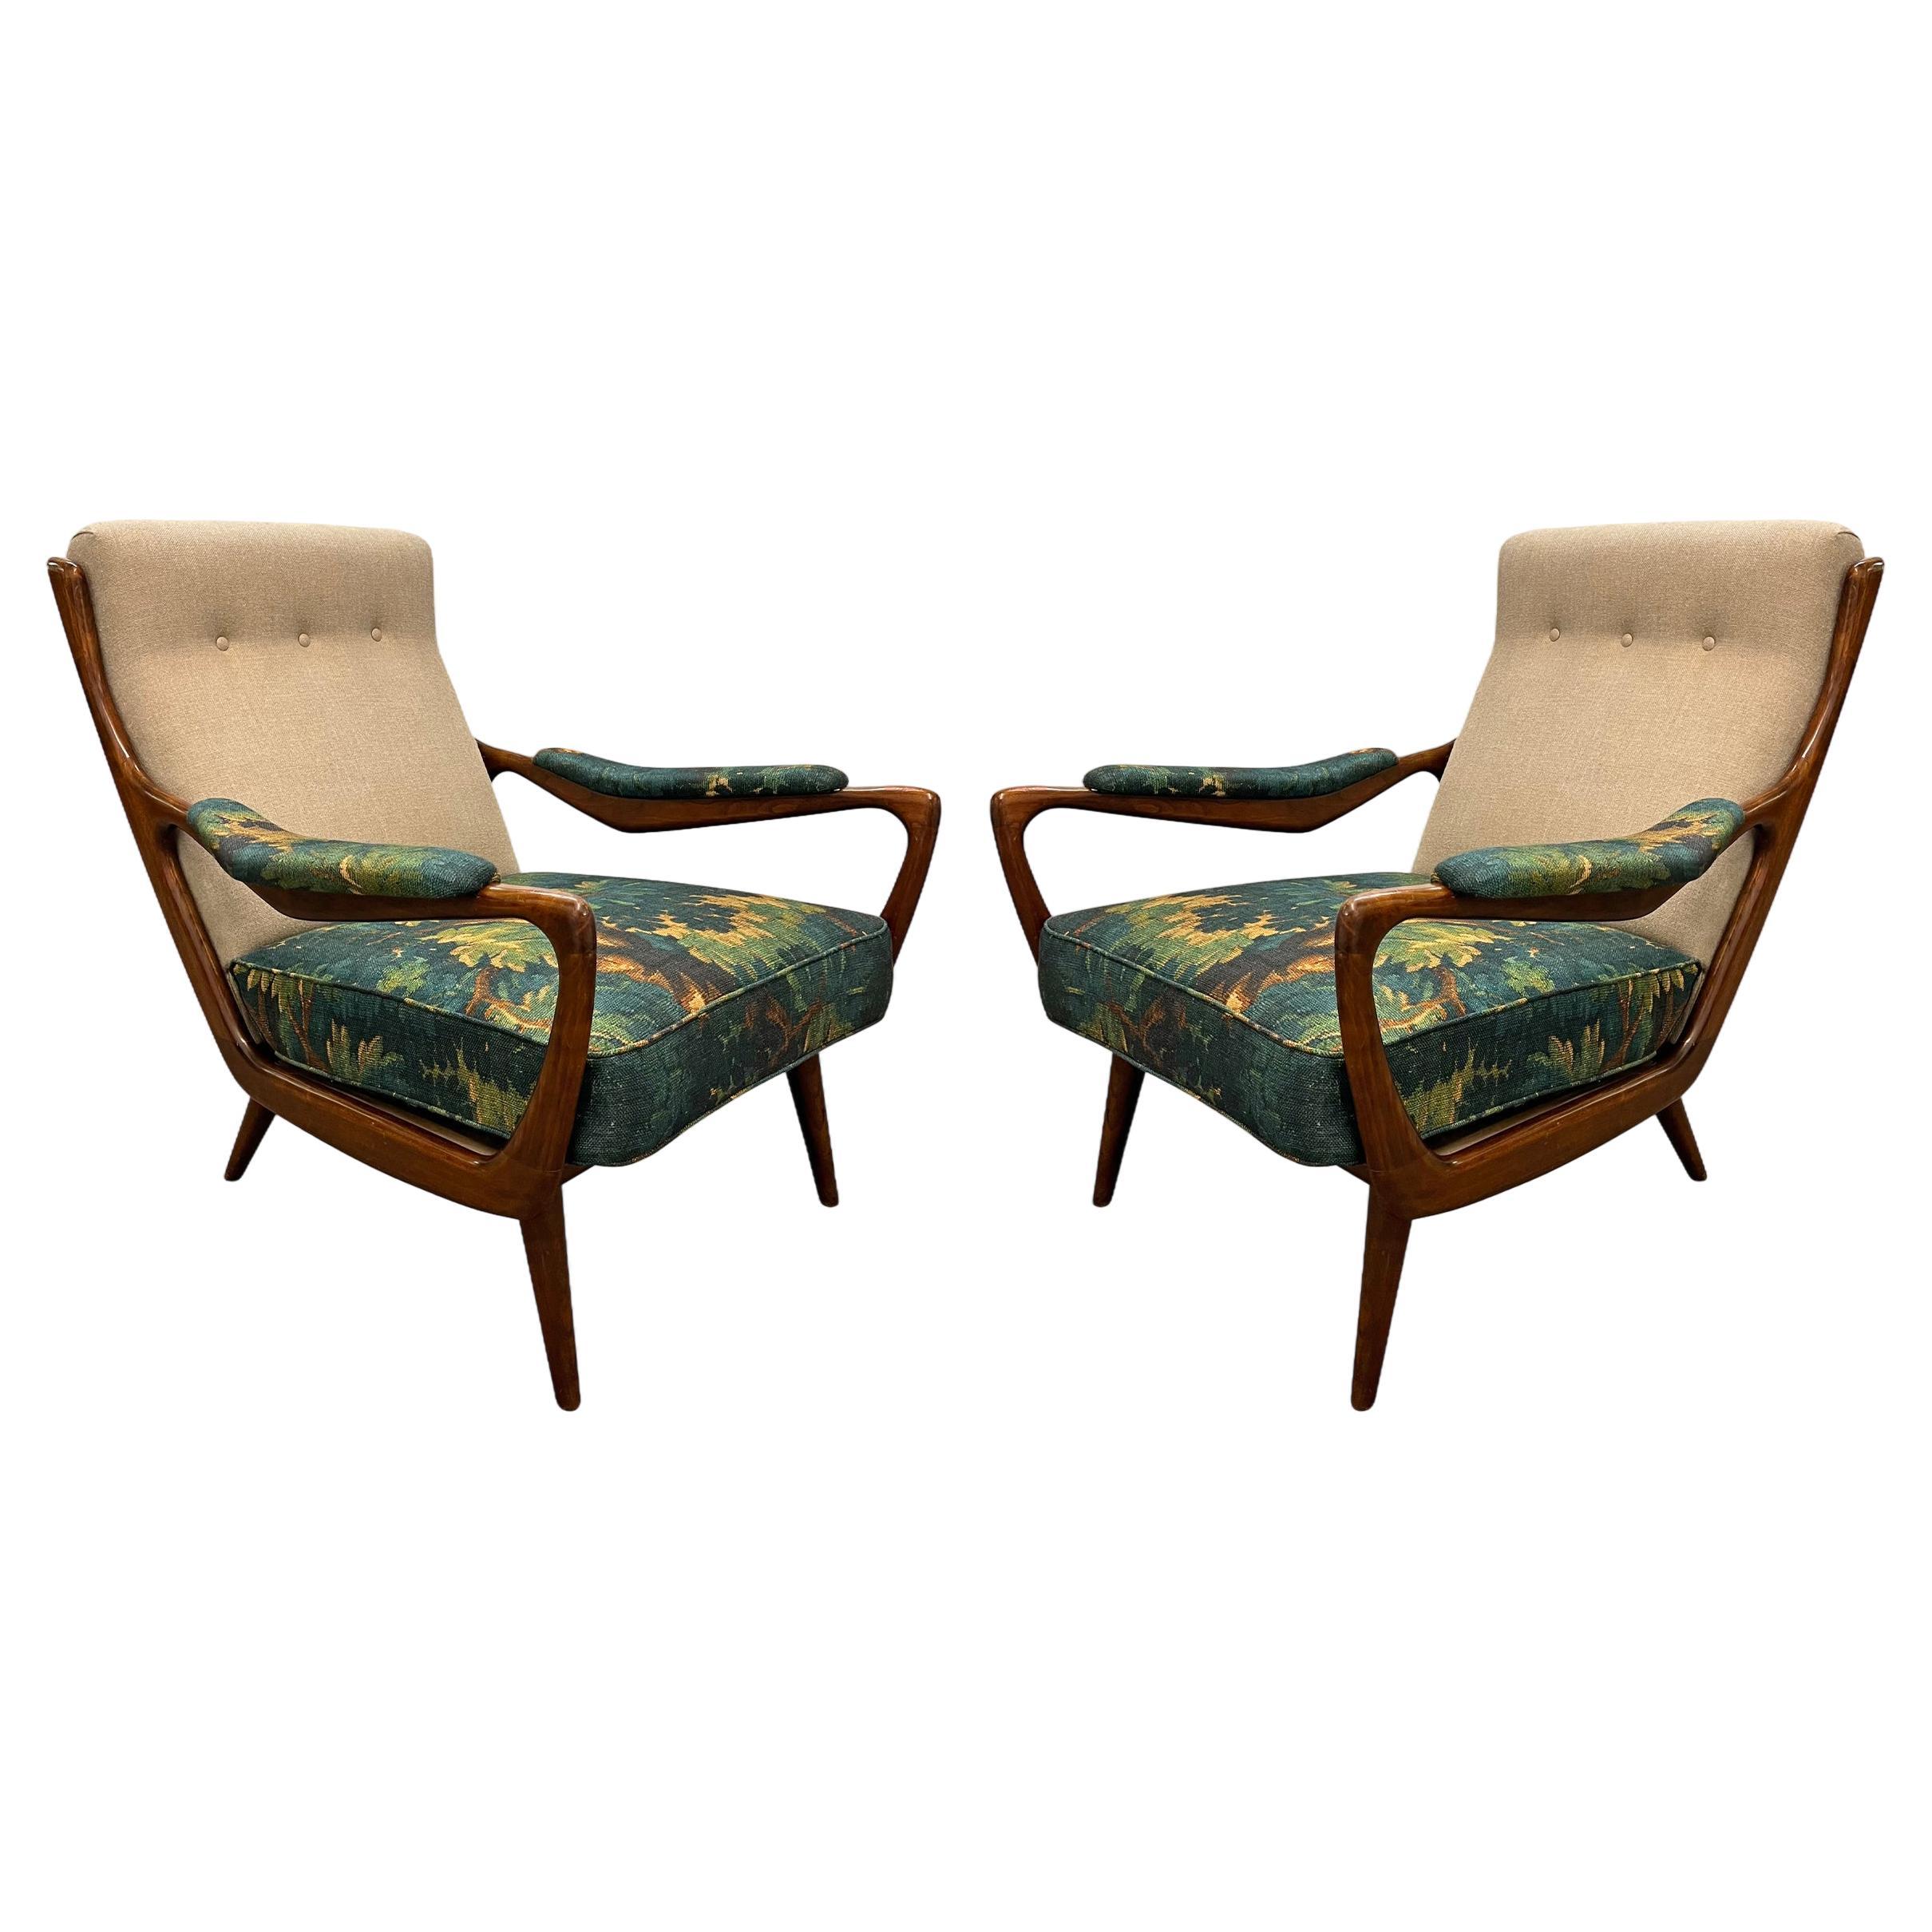 Paire de chaises longues danoises modernes des années 1950